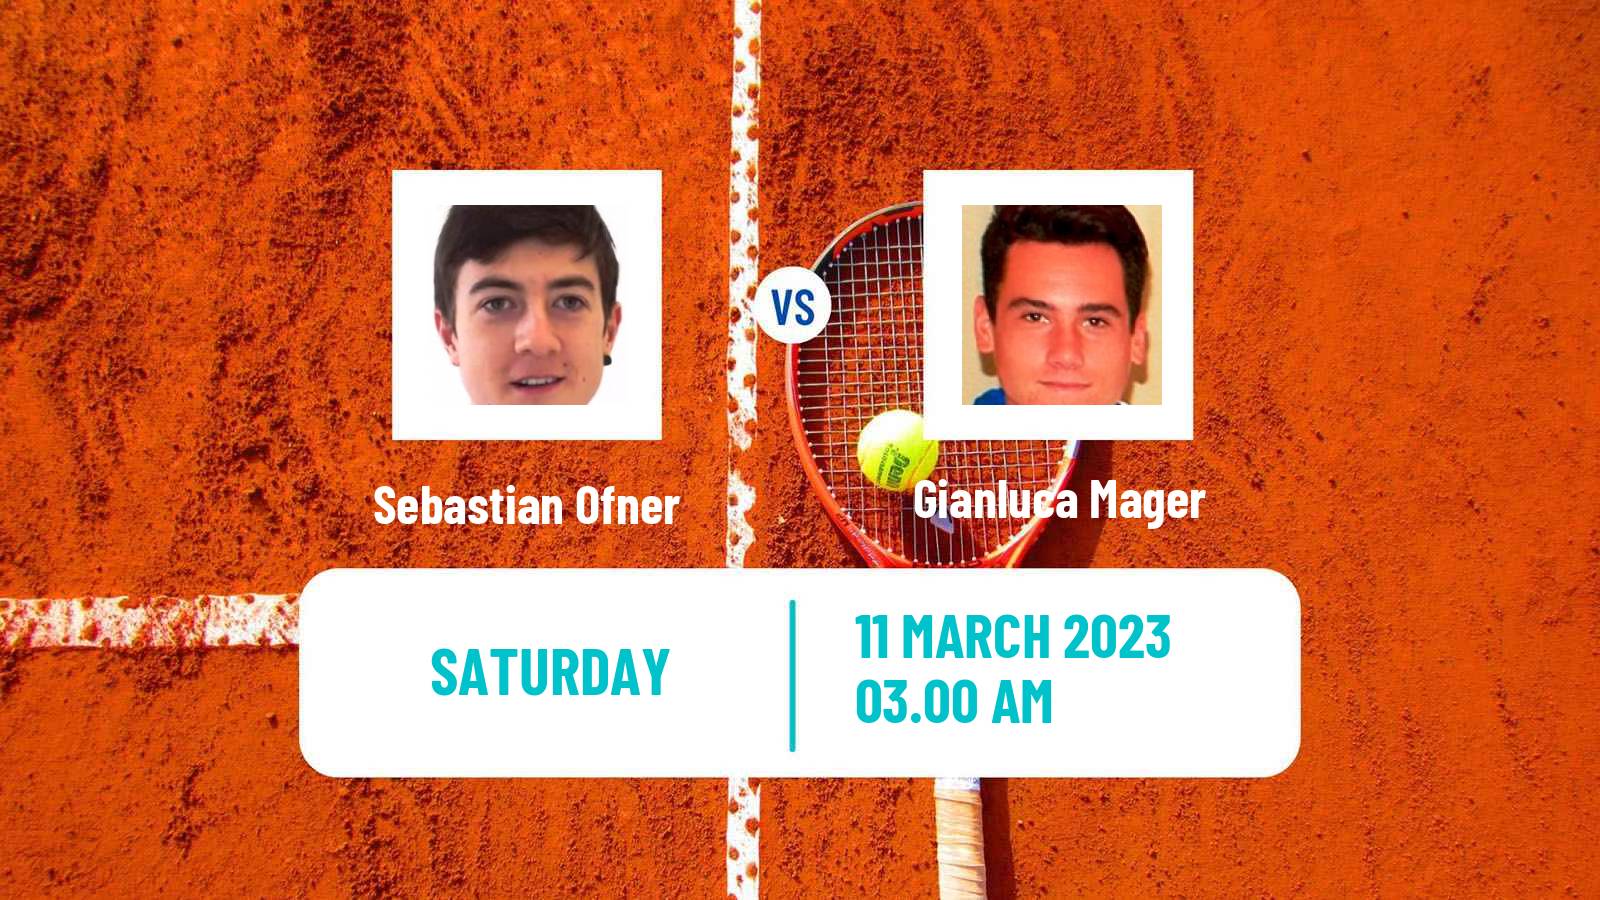 Tennis ATP Challenger Sebastian Ofner - Gianluca Mager